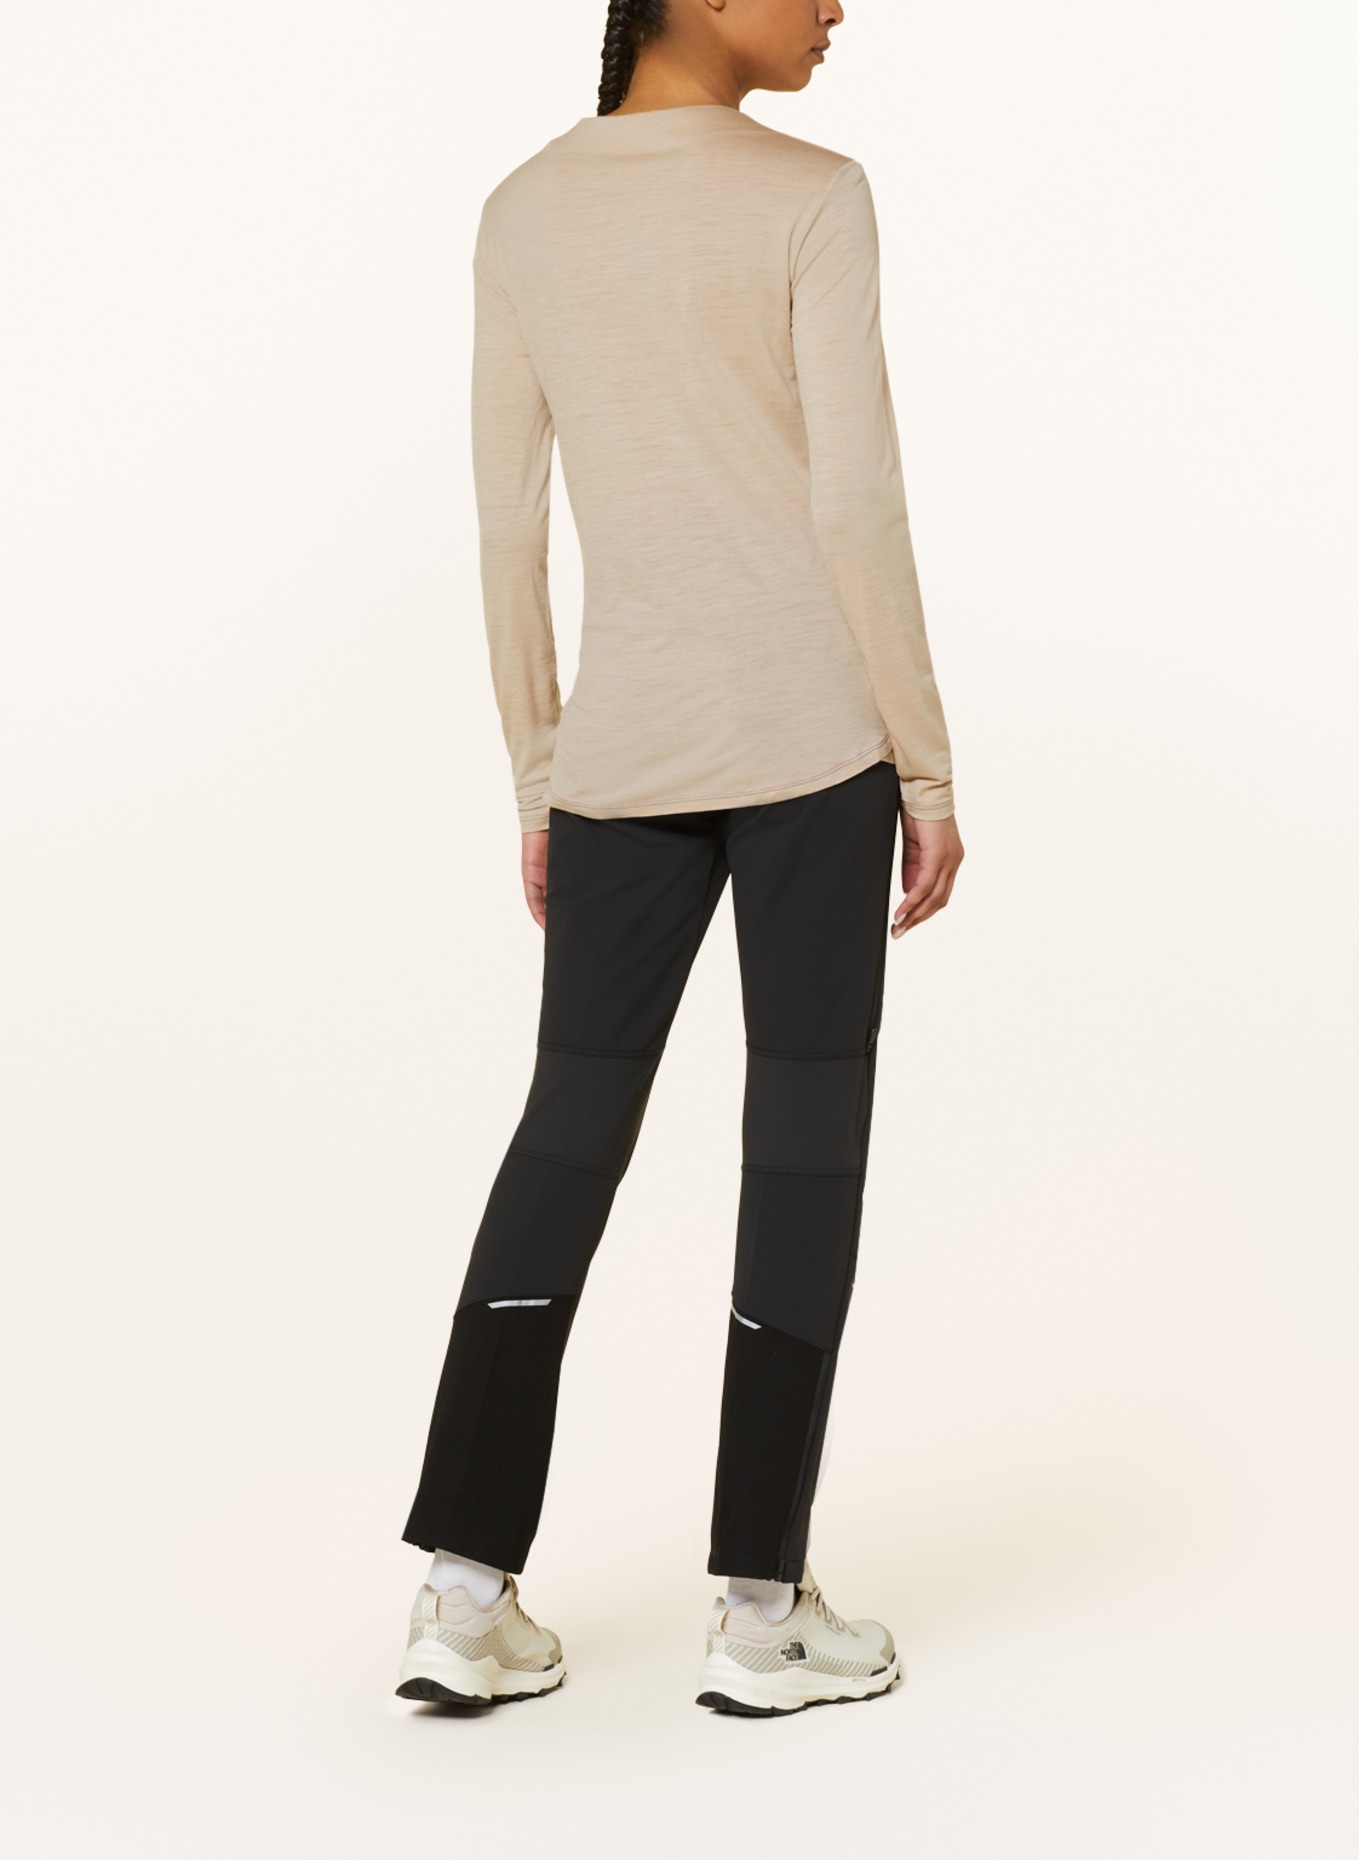 VAUDE Long sleeve shirt YARAS in merino wool, Color: BEIGE (Image 3)